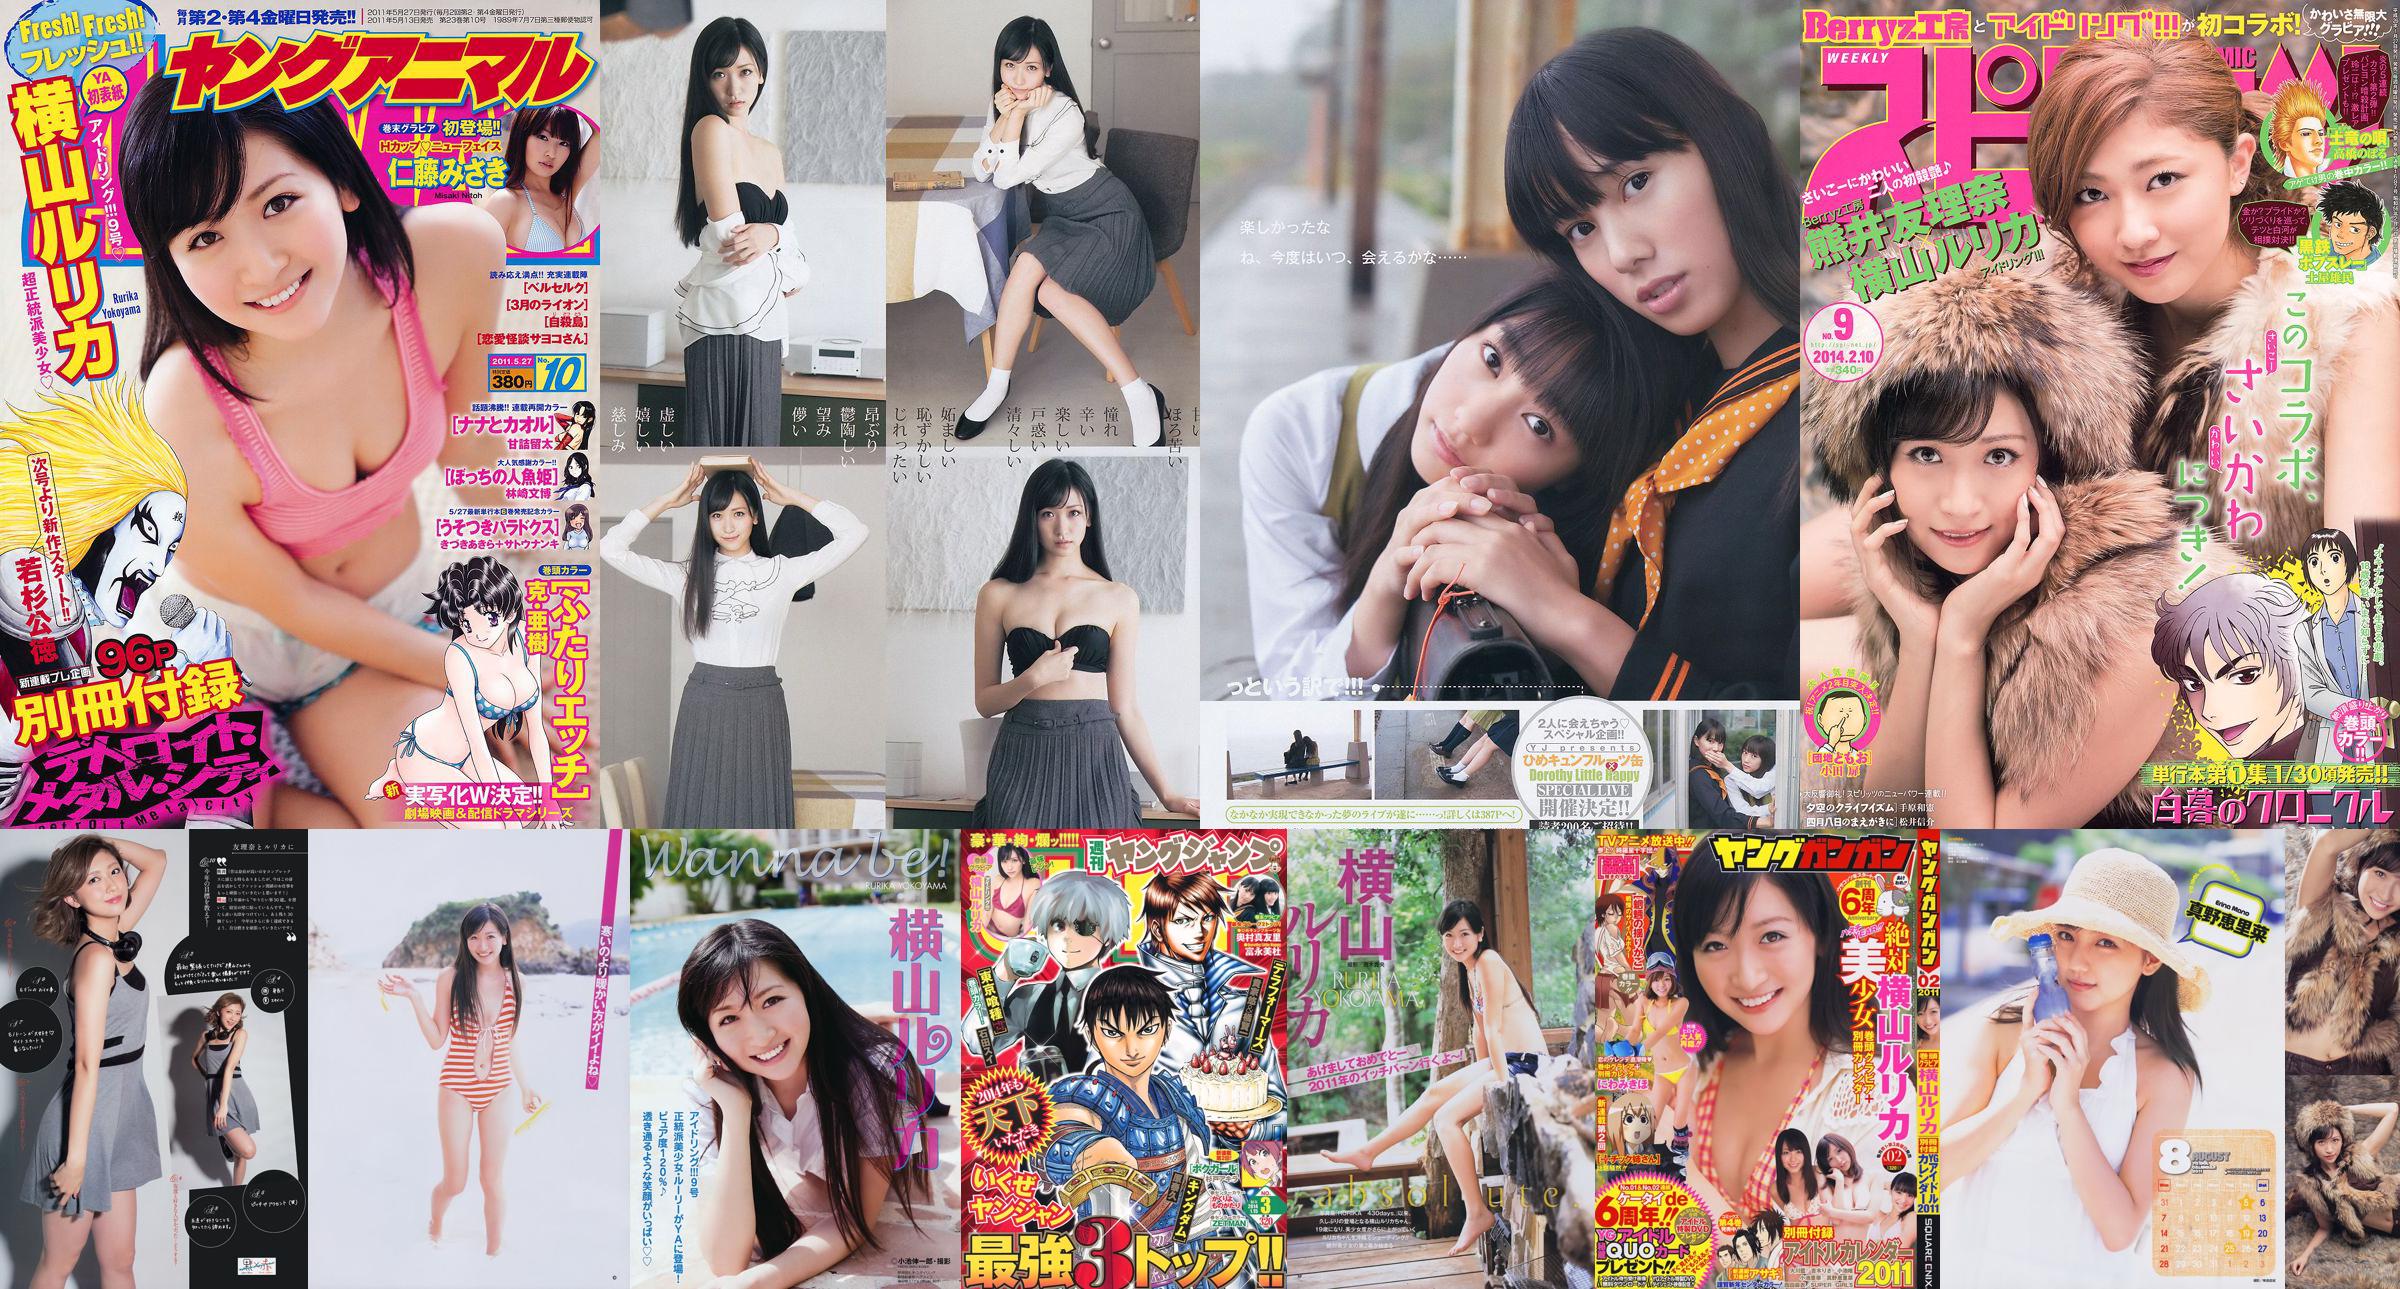 [Young Gangan] Rurika Yokoyama 2011 No.02 Photo Magazine No.39c9e5 หน้า 4